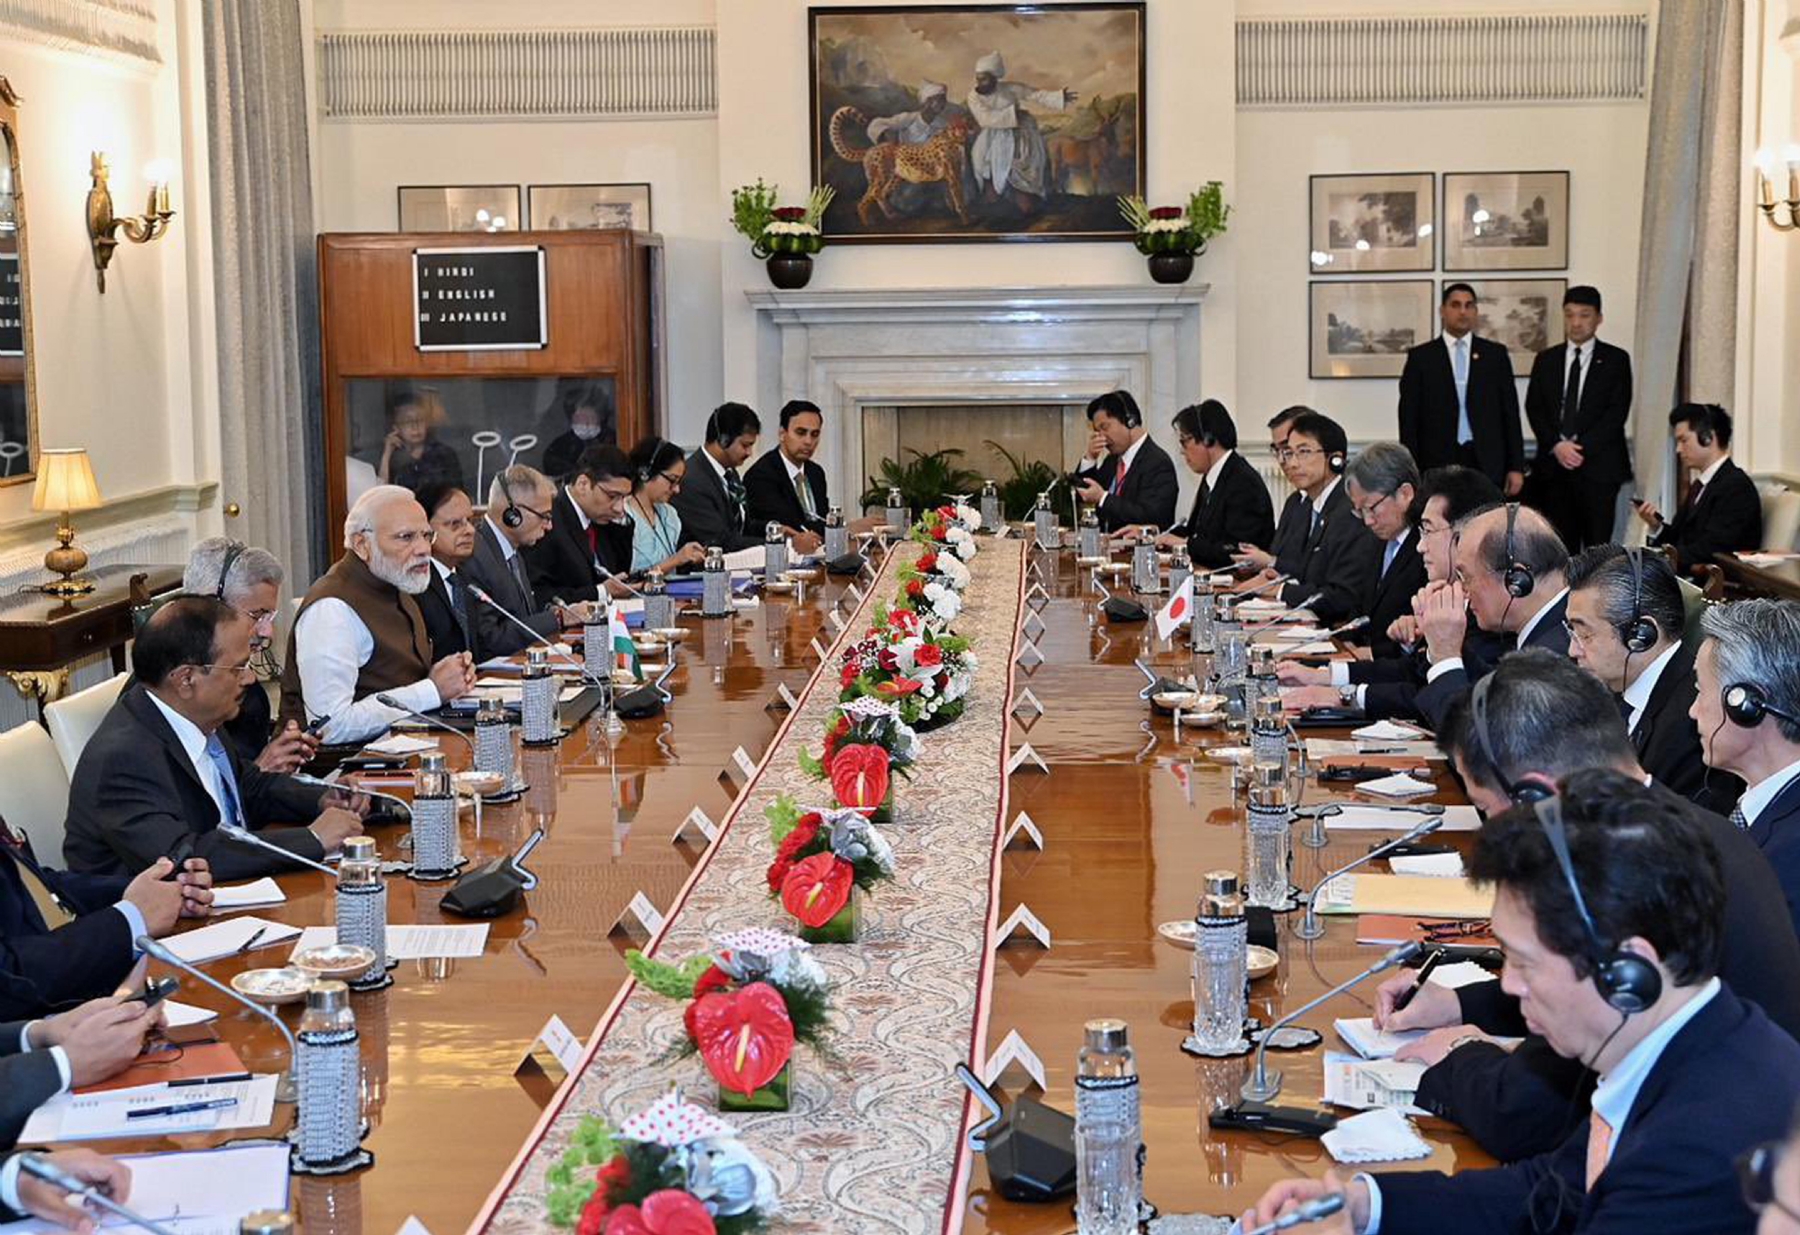 नई दिल्ली में सोमवार 20 मार्च को हैदराबाद हाउस में प्रधानमंत्री नरेन्द्र मोदी ने जापानी प्रधानमंत्री फुमियो किशिदा का औपचारिक स्वागत किया। हिन्दुस्थान समाचार/ फोटो गणेश बिष्ट